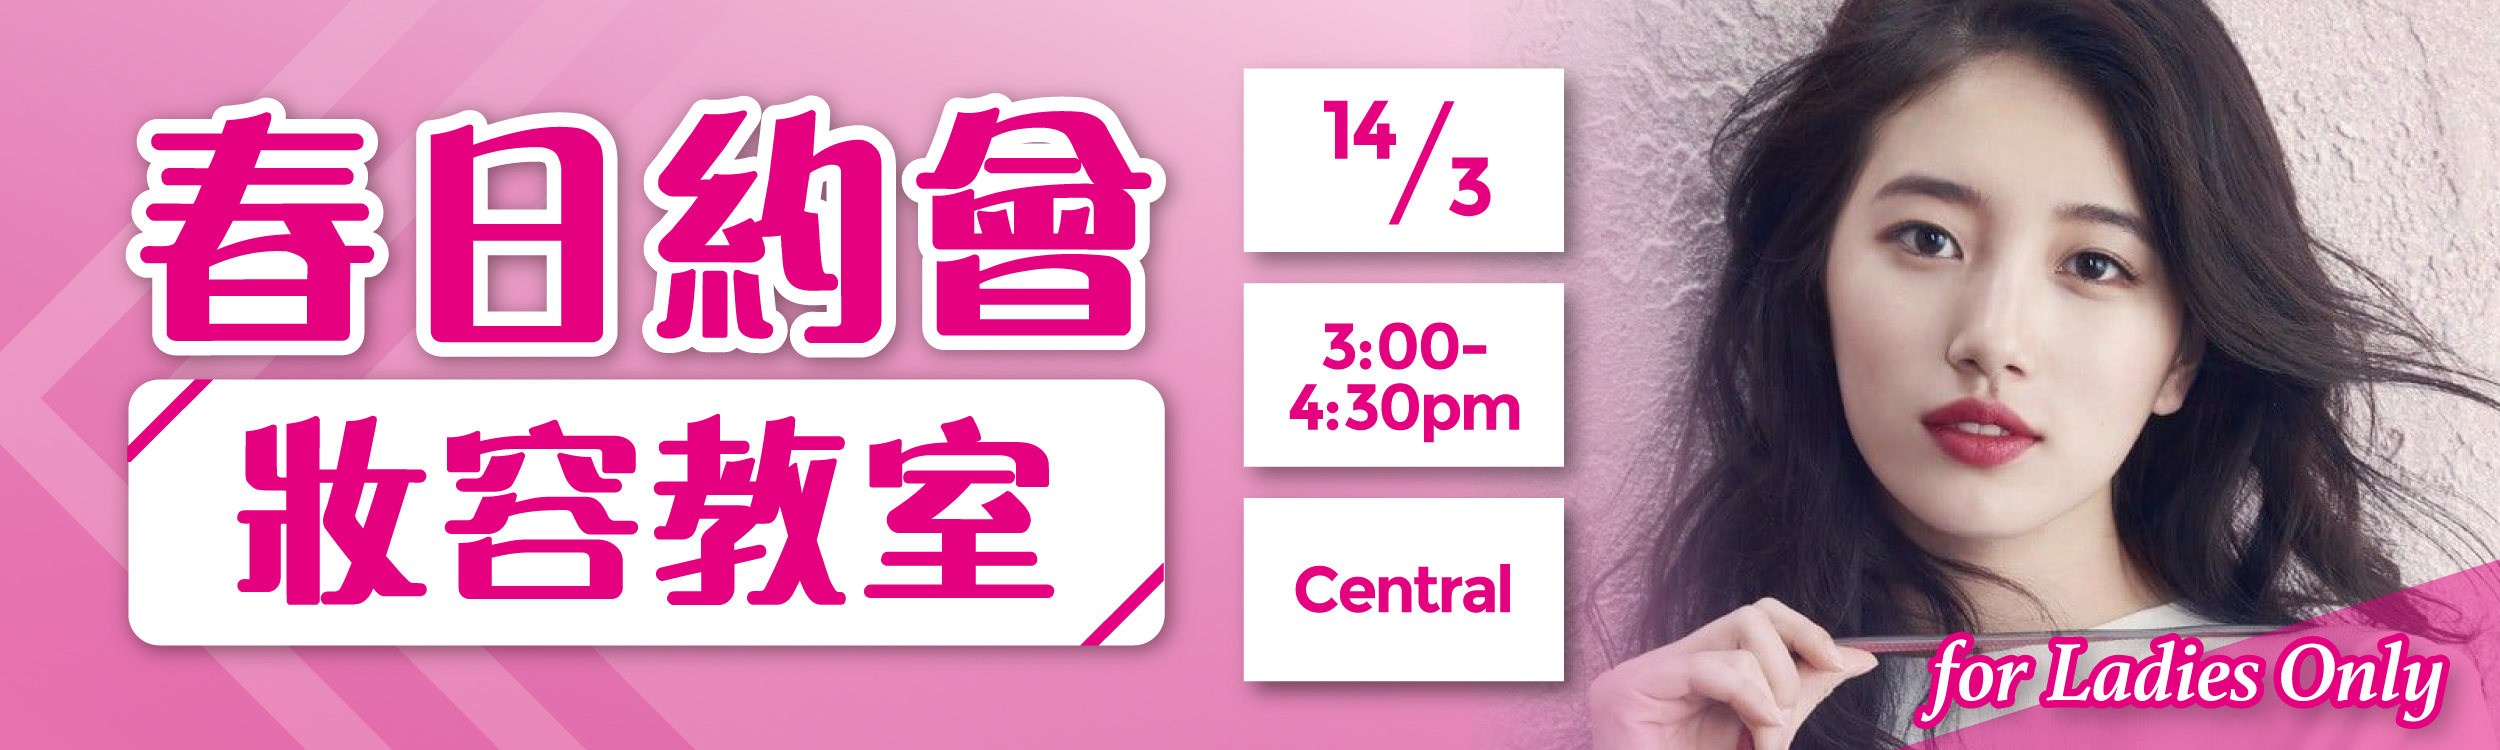 (完滿舉行)春日約會妝容教室 for Ladies Only - 2020年3月14日(星期六) 香港交友約會業協會 Hong Kong Speed Dating Federation - Speed Dating , 一對一約會, 單對單約會, 約會行業, 約會配對